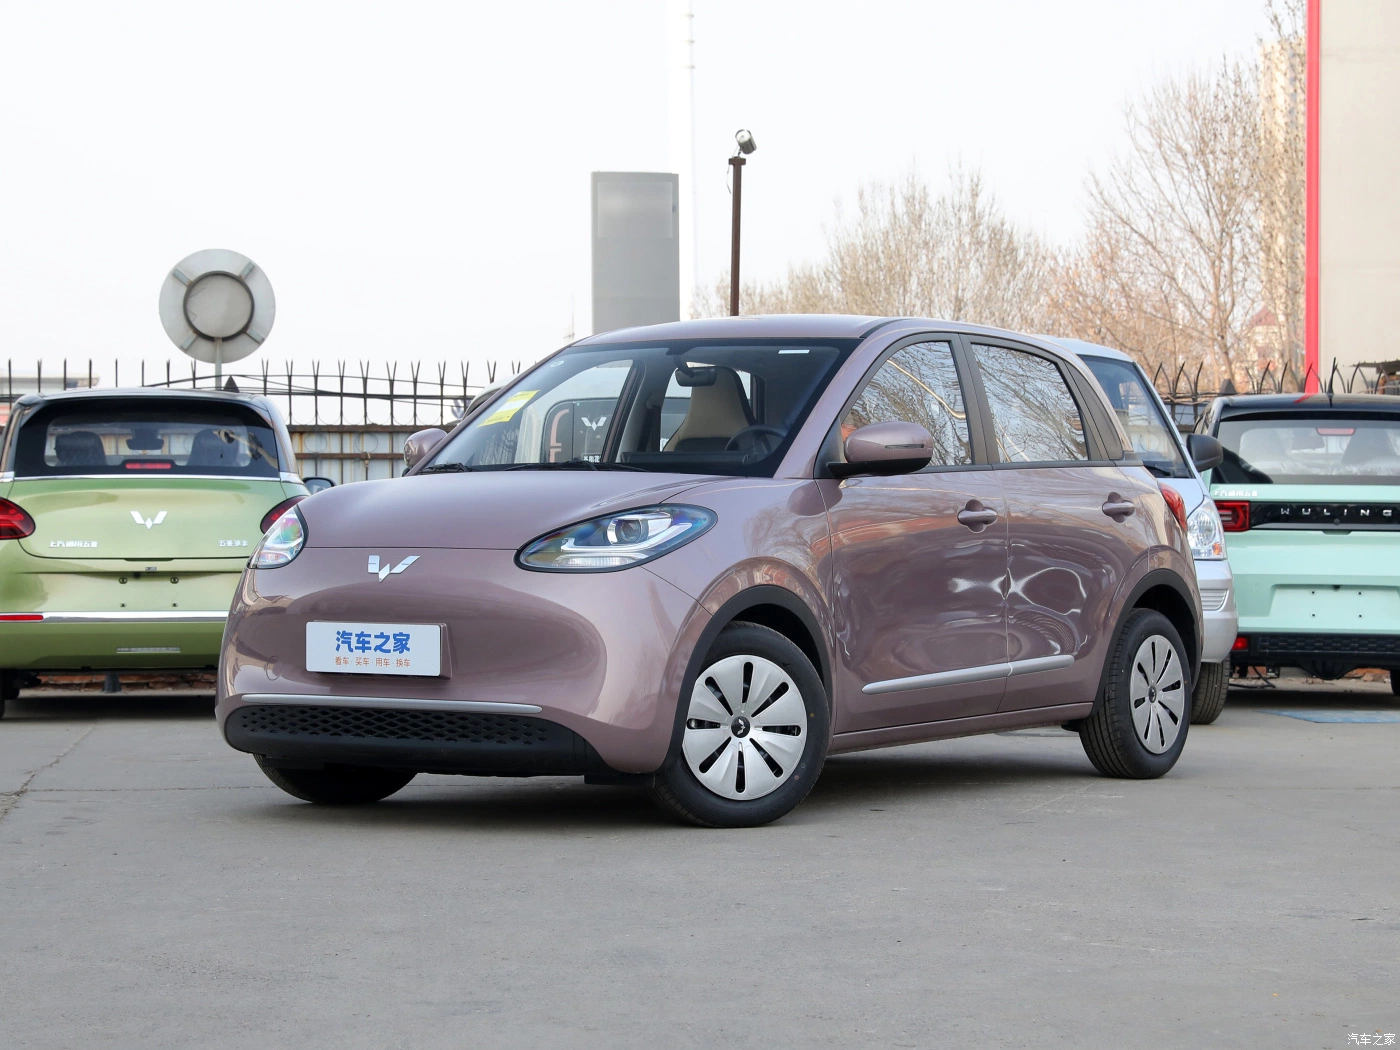 Venda a quente em Stock Wuling Nova chegada Bingo 2023 203km Novo veículo elétrico (EV) Energy Smart de 5 portas e 4 lugares fabricado na China